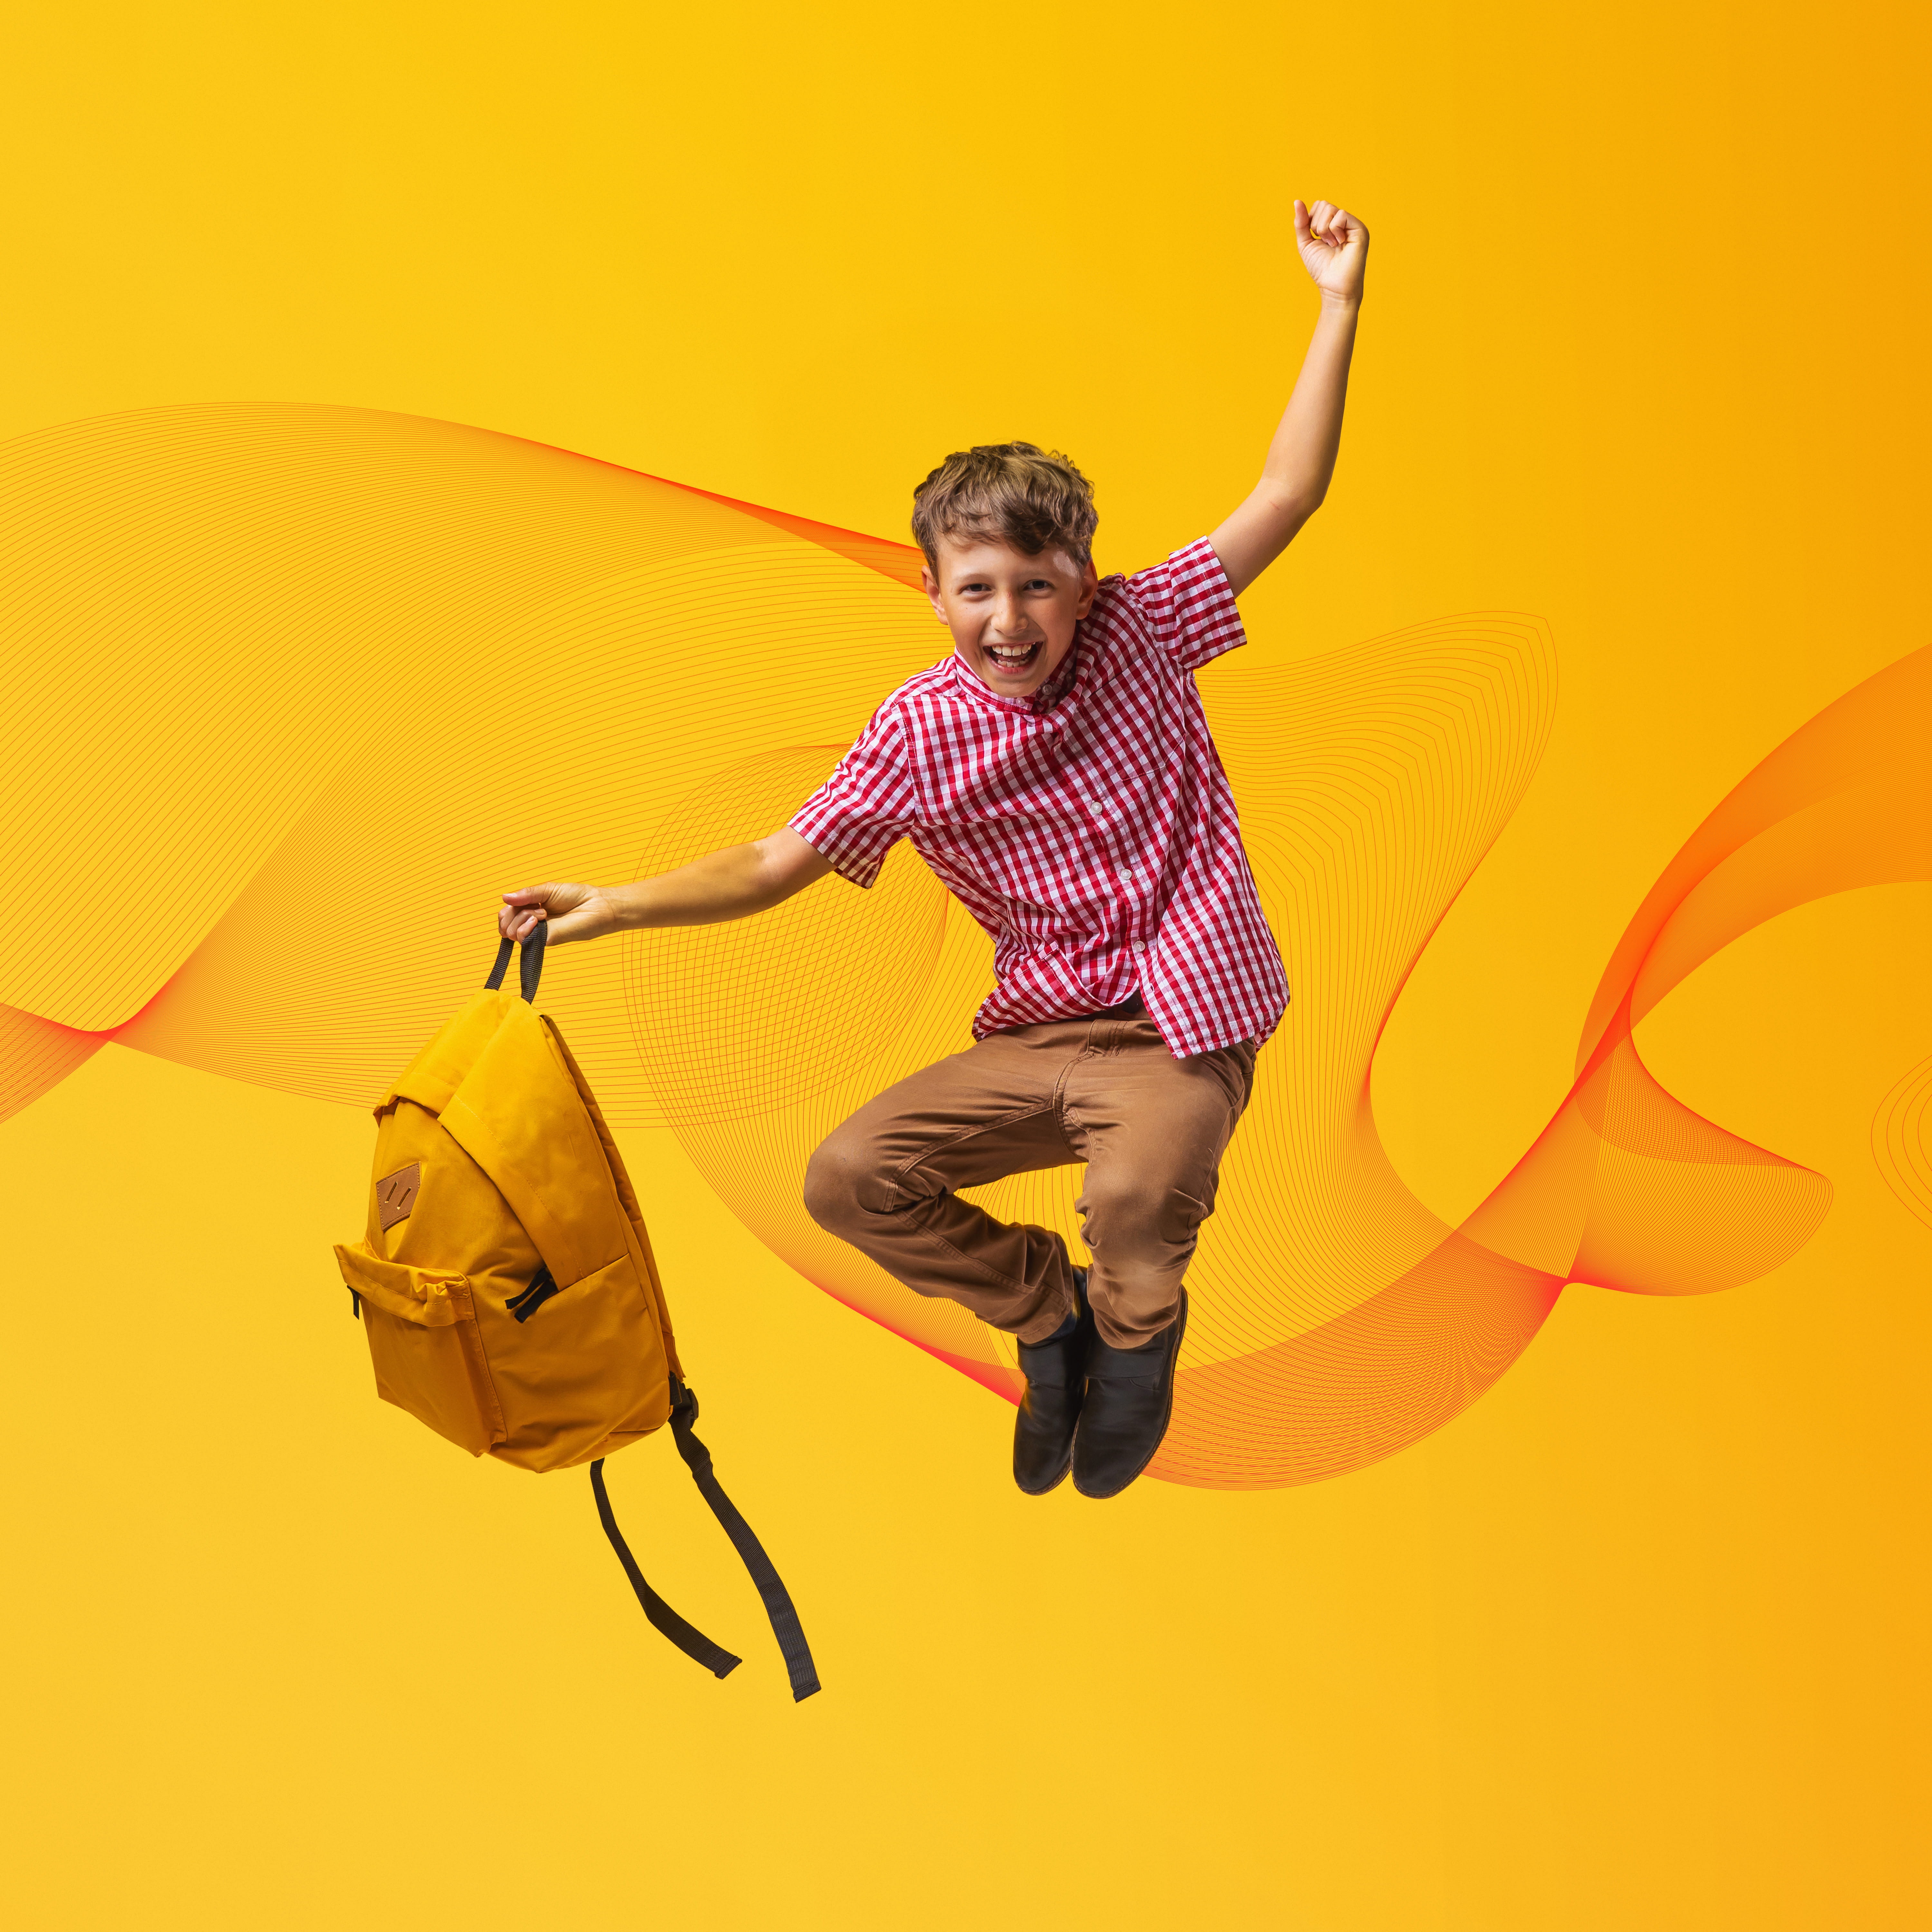 Jeune garçon avec sac à dos jaune qui saute